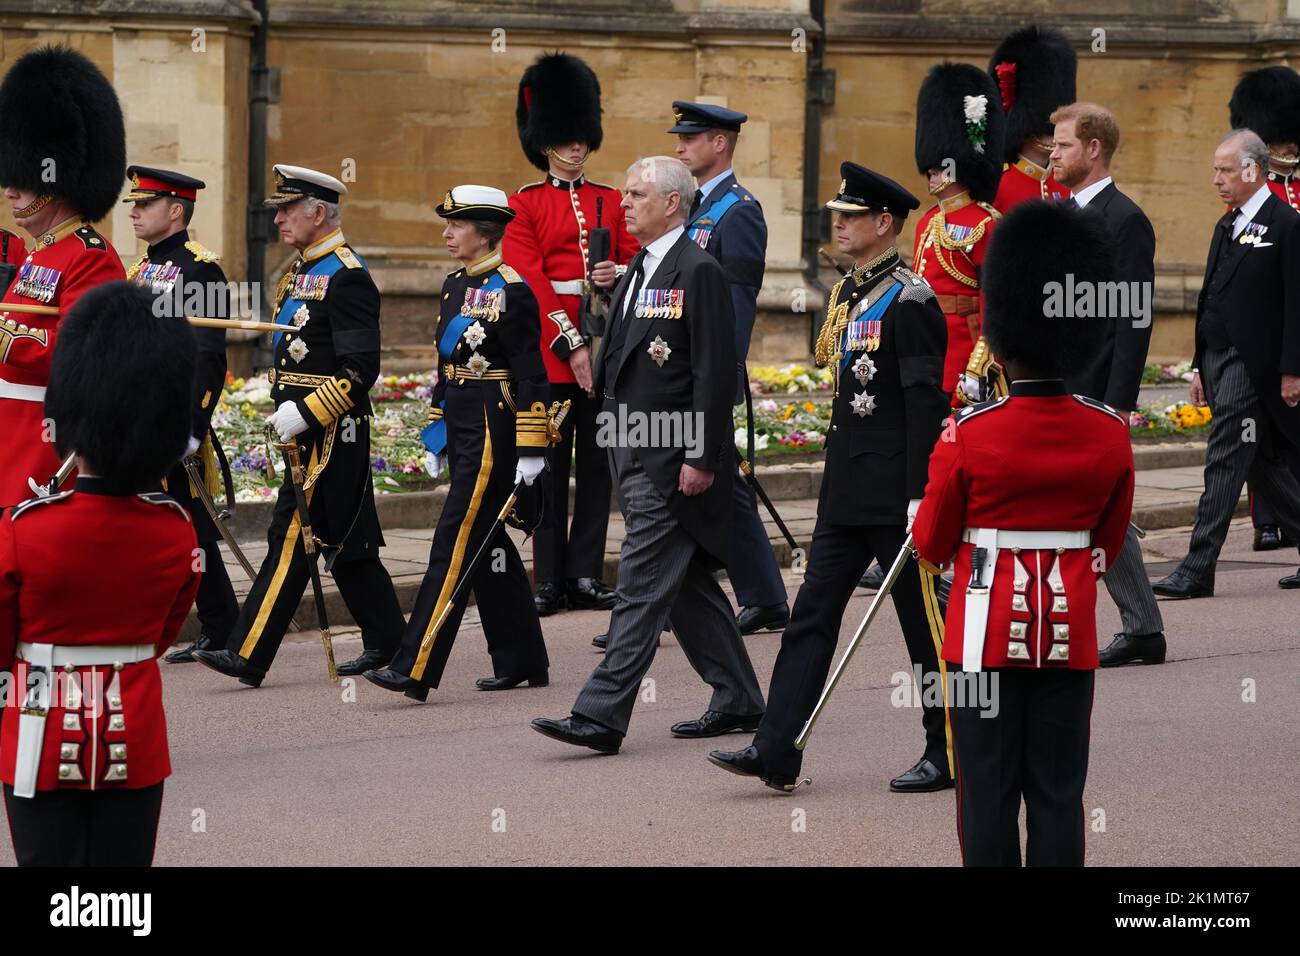 Le roi Charles III, la princesse royale, le duc d'York, le comte de Wessex avec le prince de Galles, le duc de Sussex et le comte de Snowden arrivent pour le service de committal à la chapelle Saint-Georges, château de Windsor pour la reine Elizabeth II Date de la photo: Lundi 19 septembre 2022. Banque D'Images